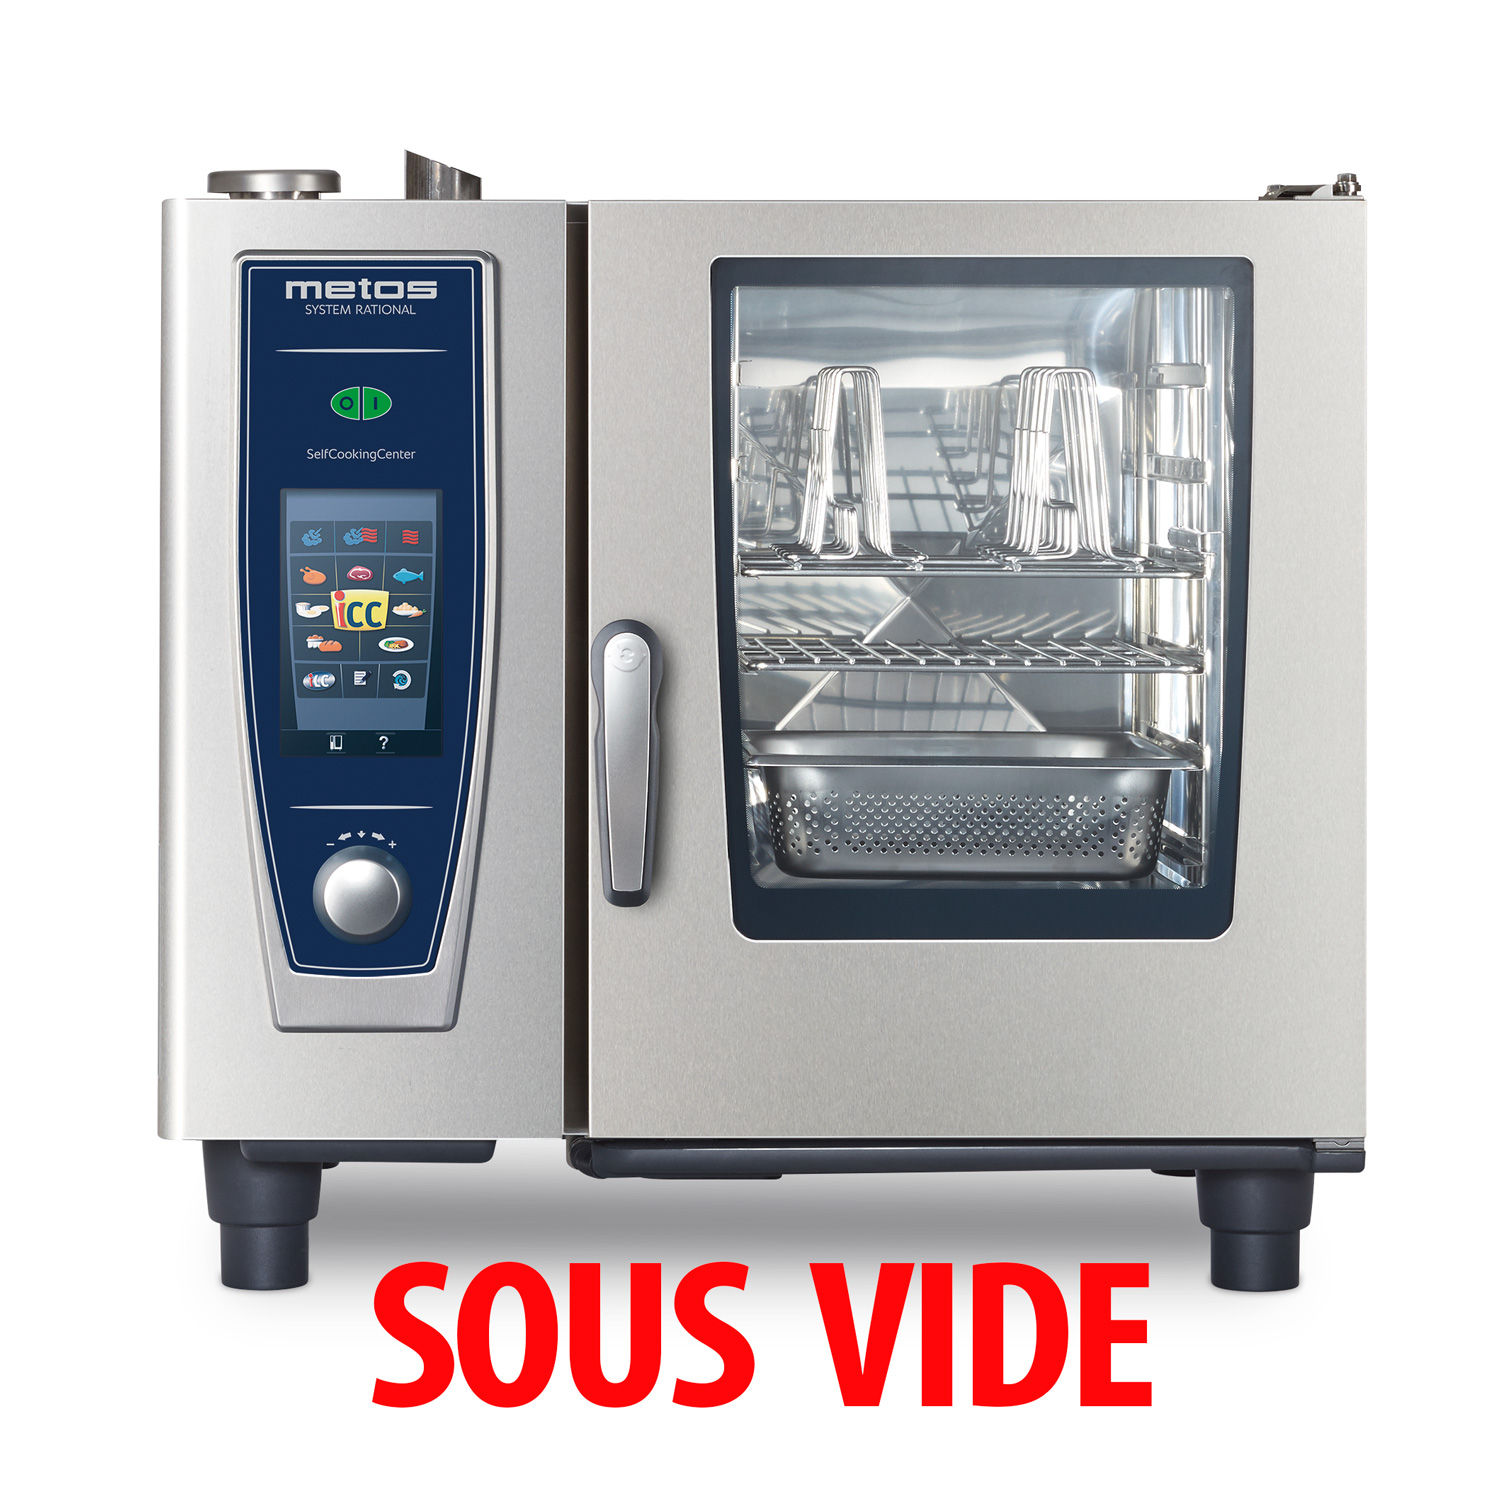 waarschijnlijk Manuscript voormalig Combi oven Metos SelfCookingCenter 61 Sous Vide | Kitchen equipment Metos  Belgium